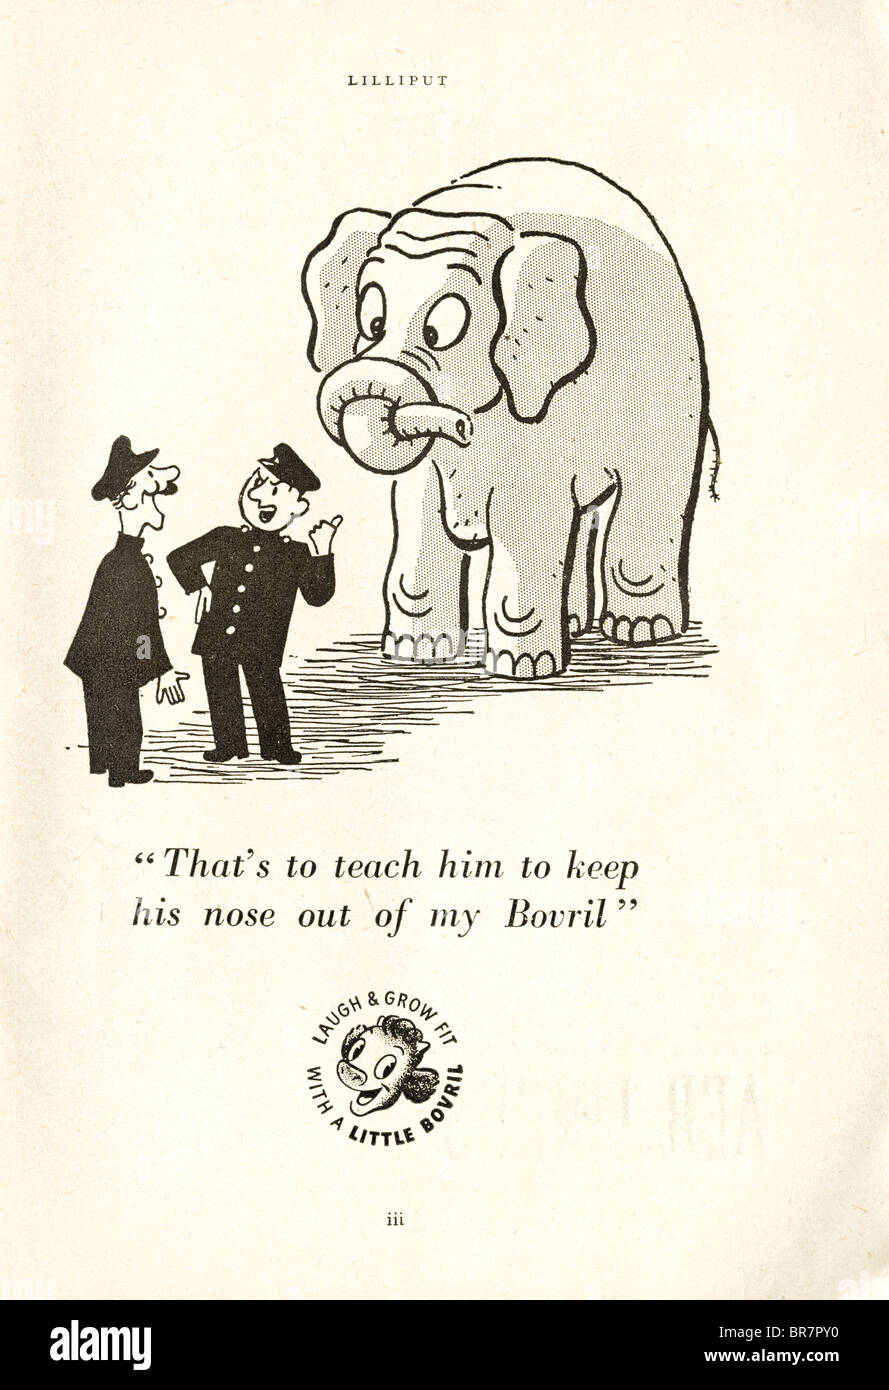 Black and white advert for Bovril inside Lilliput magazine dated November 1947 Stock Photo